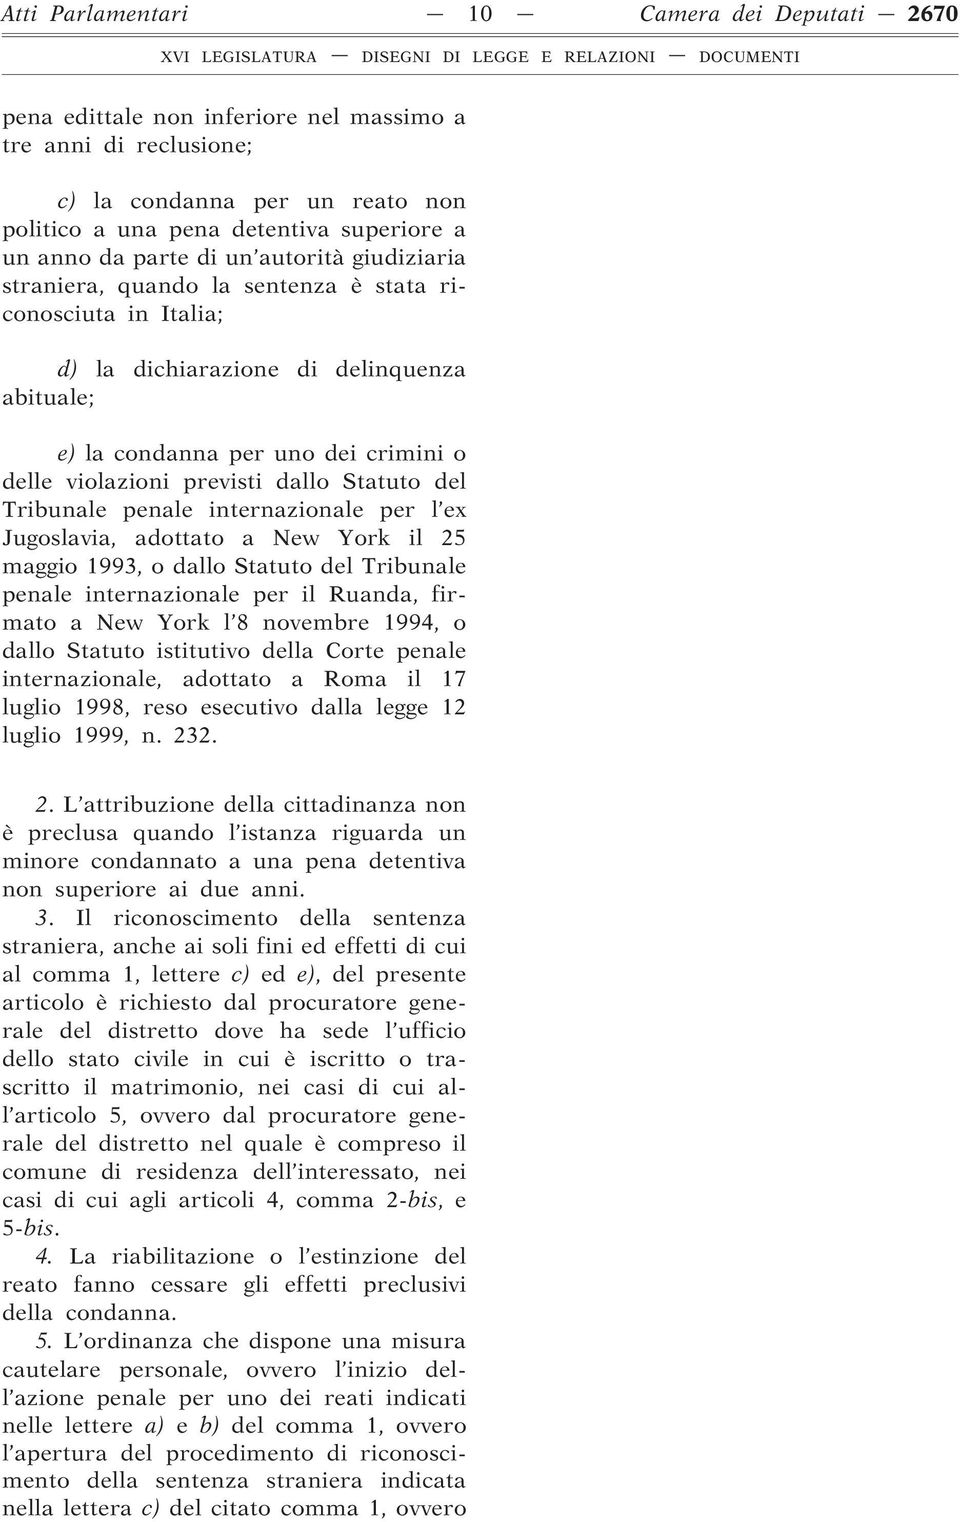 previsti dallo Statuto del Tribunale penale internazionale per l ex Jugoslavia, adottato a New York il 25 maggio 1993, o dallo Statuto del Tribunale penale internazionale per il Ruanda, firmato a New